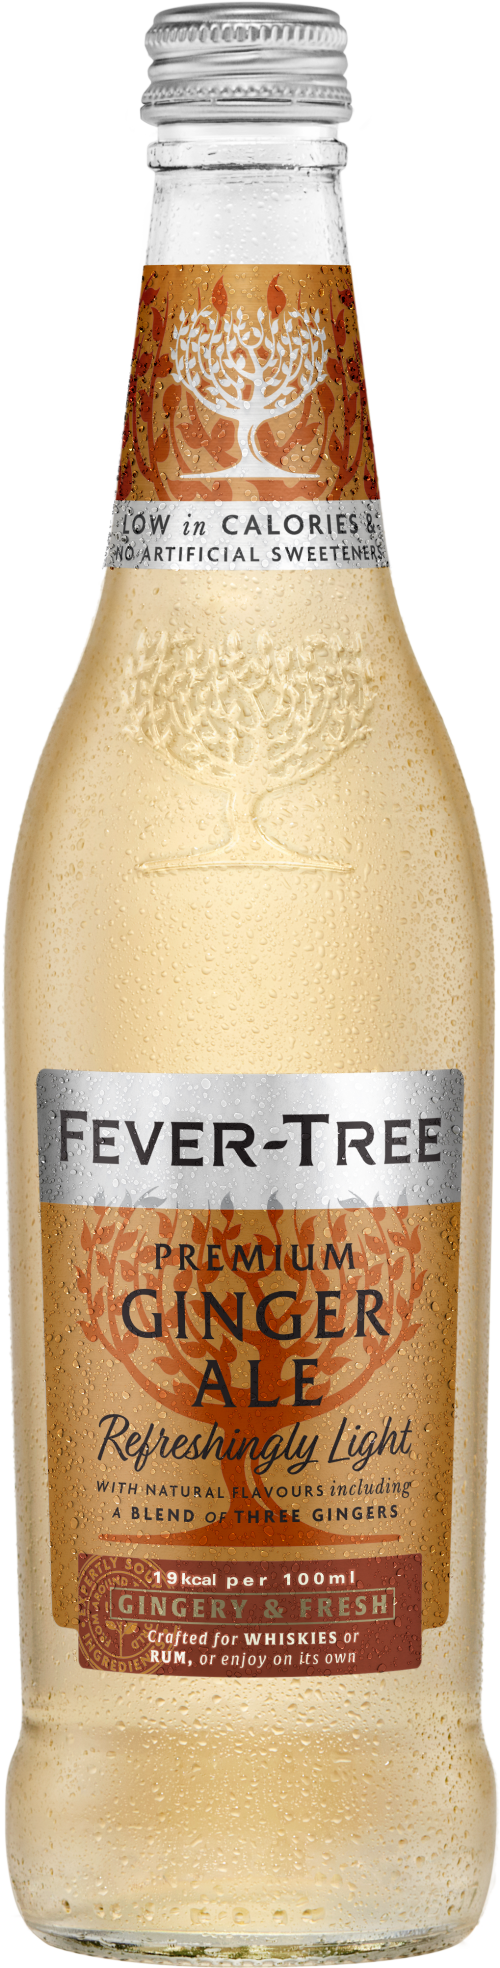 FEVER-TREE Refreshingly Light Ginger Ale 500ml